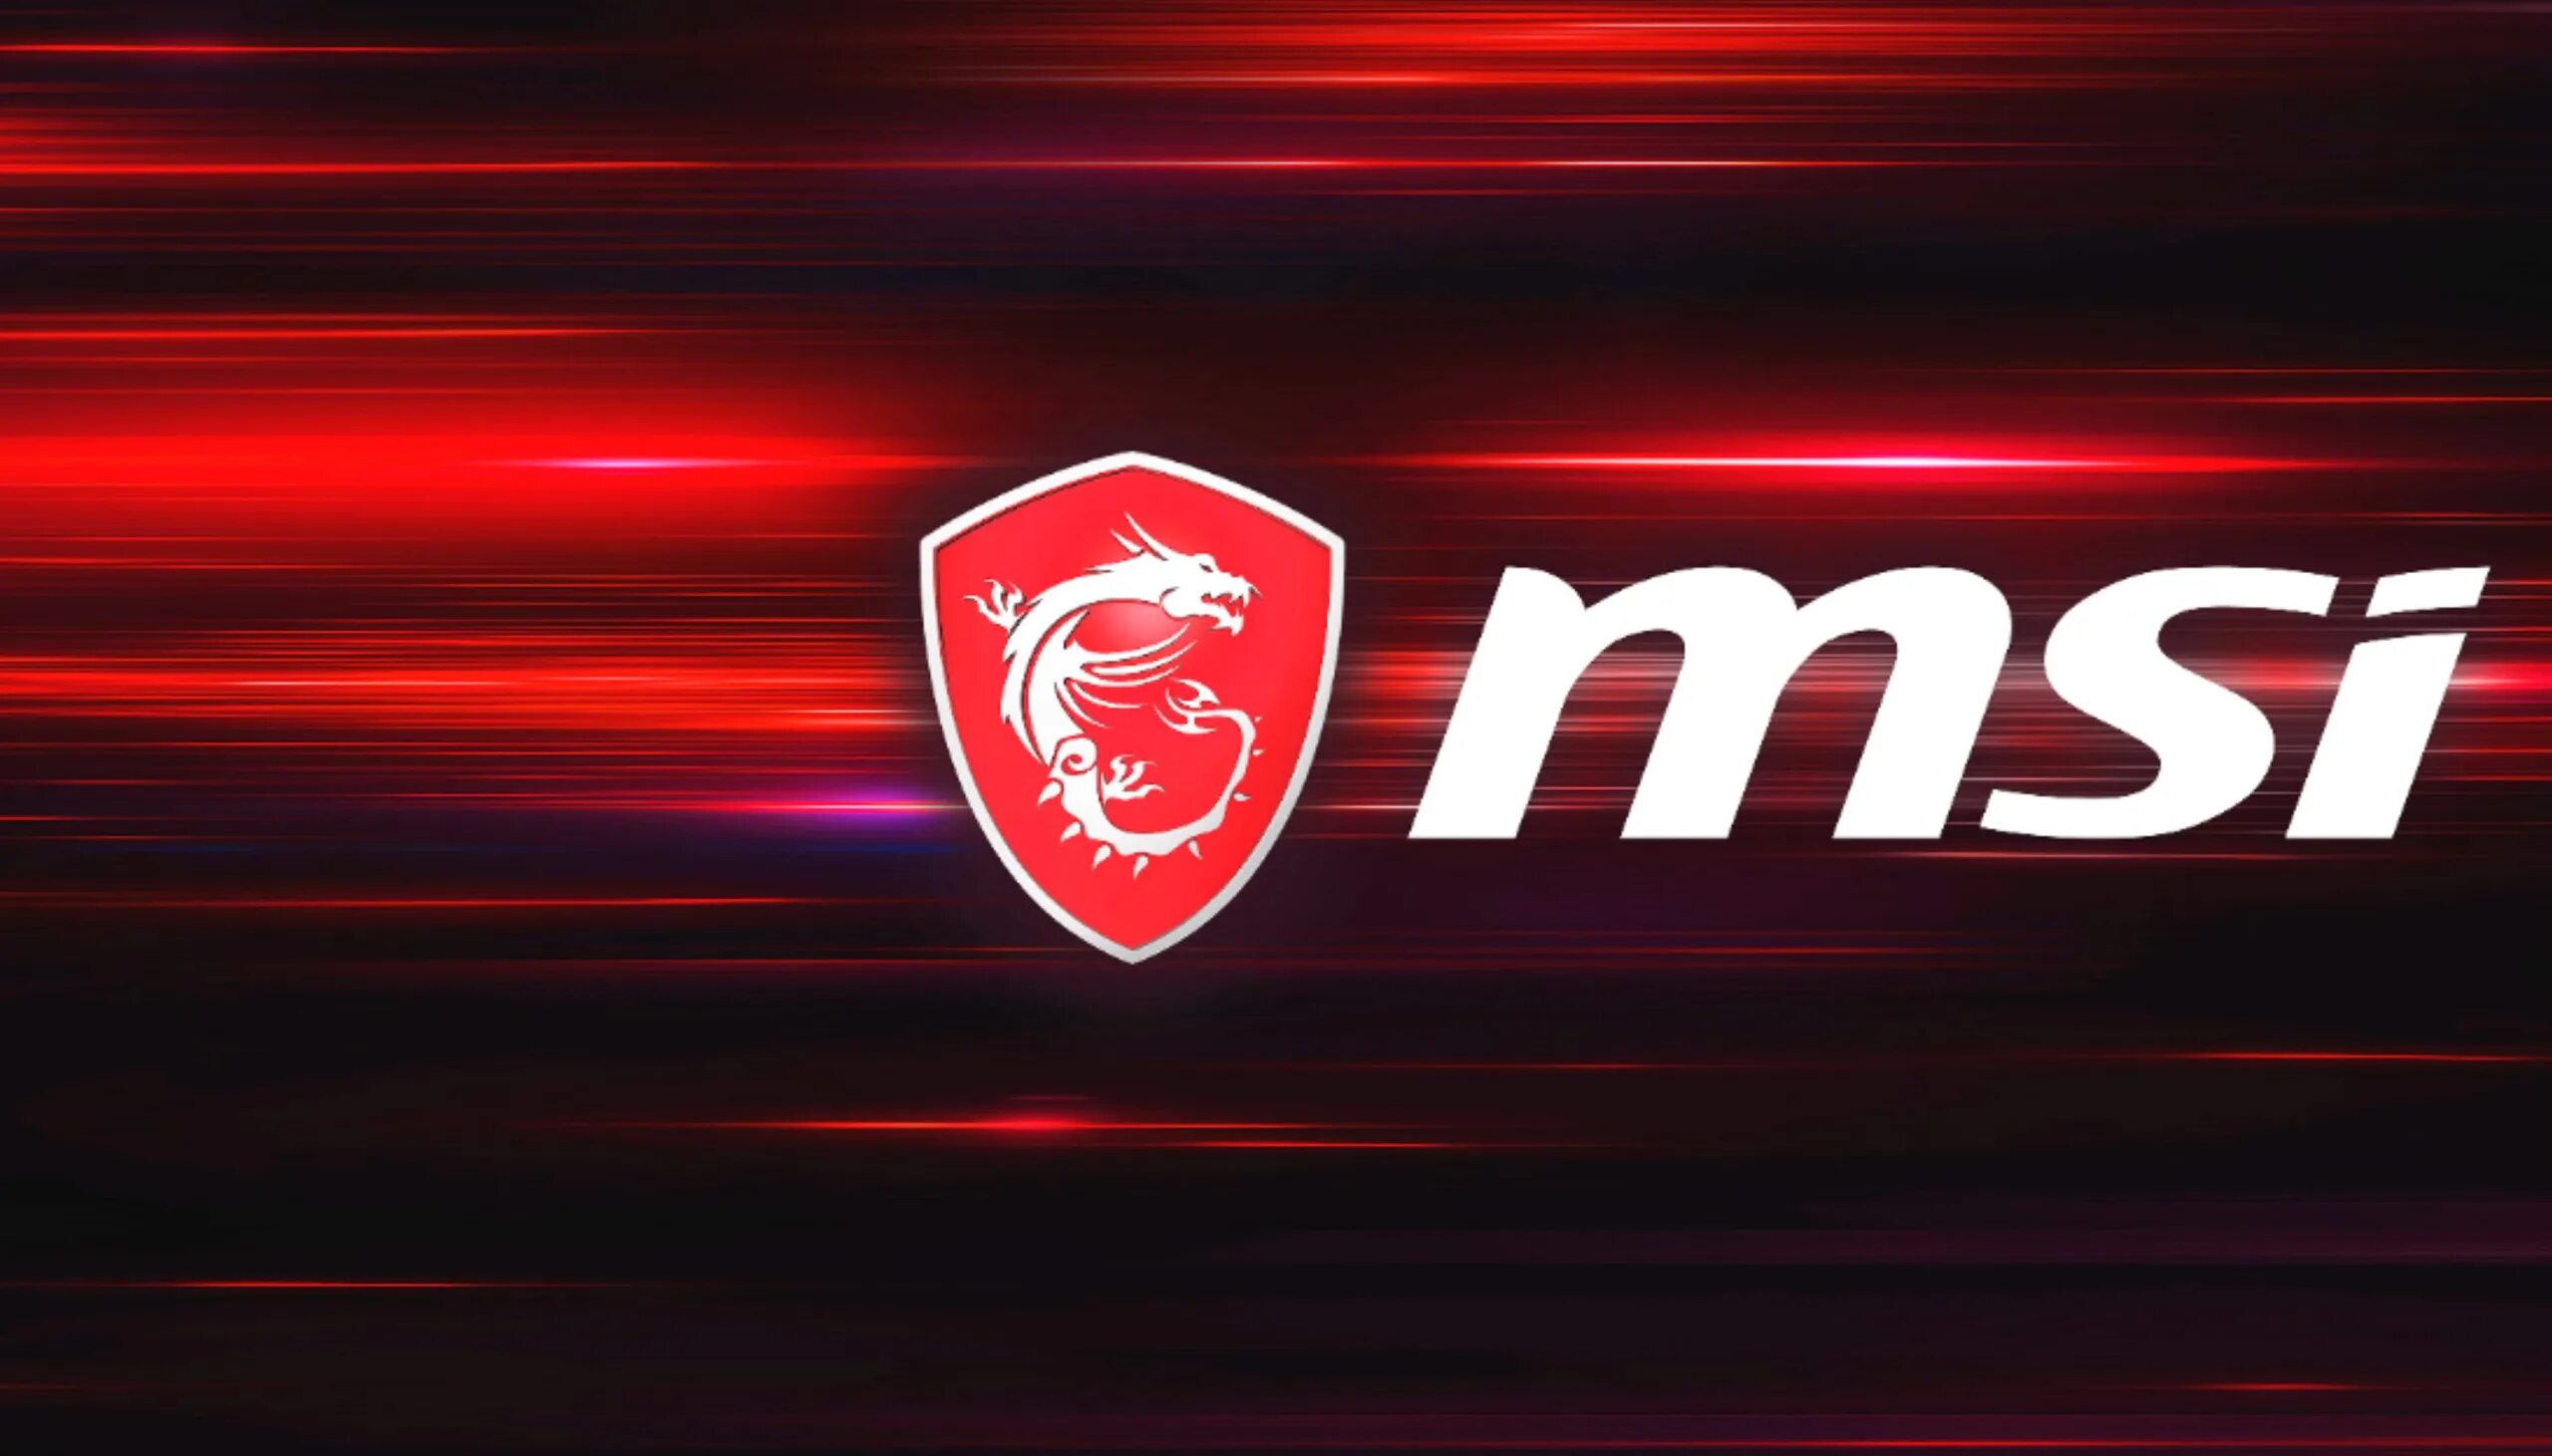 Msi 1920x1080. MSI. Логотип компании MSI. Обои на игровой ноутбук MSI. MSI 4r.